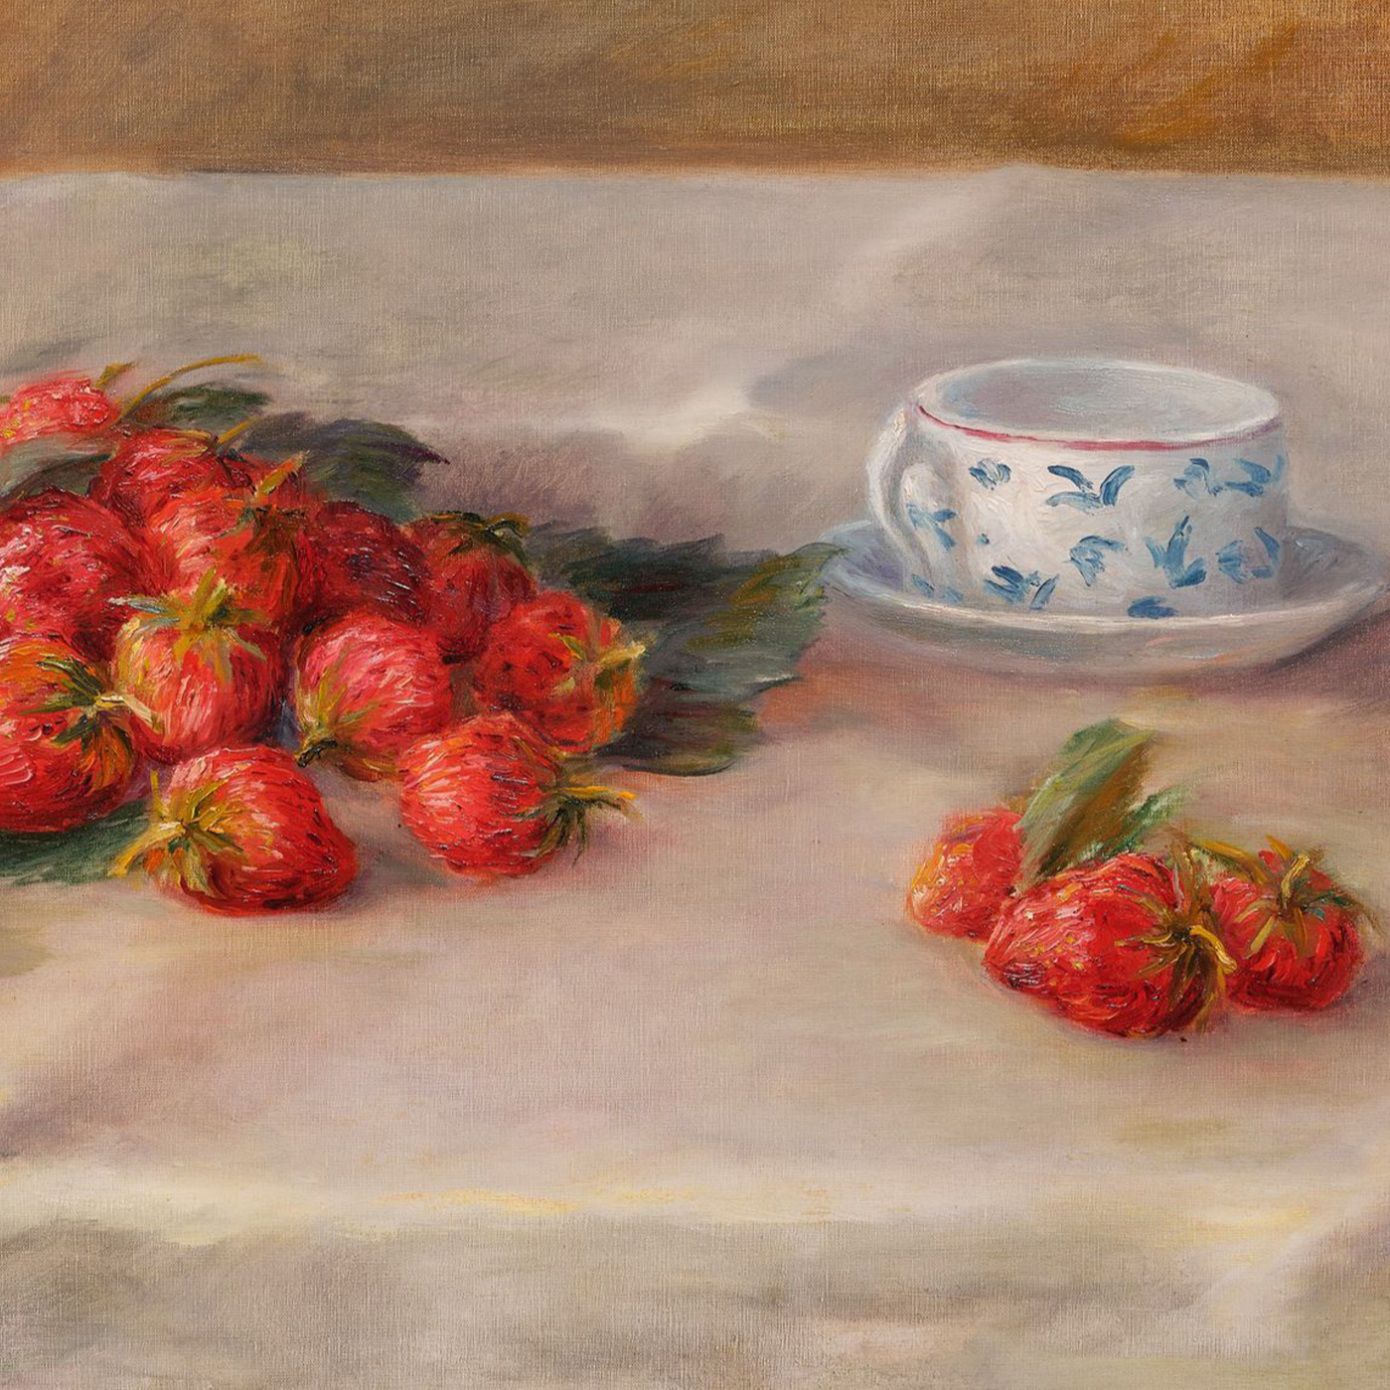 Pierre-Auguste Renoir’s Les Fraises.